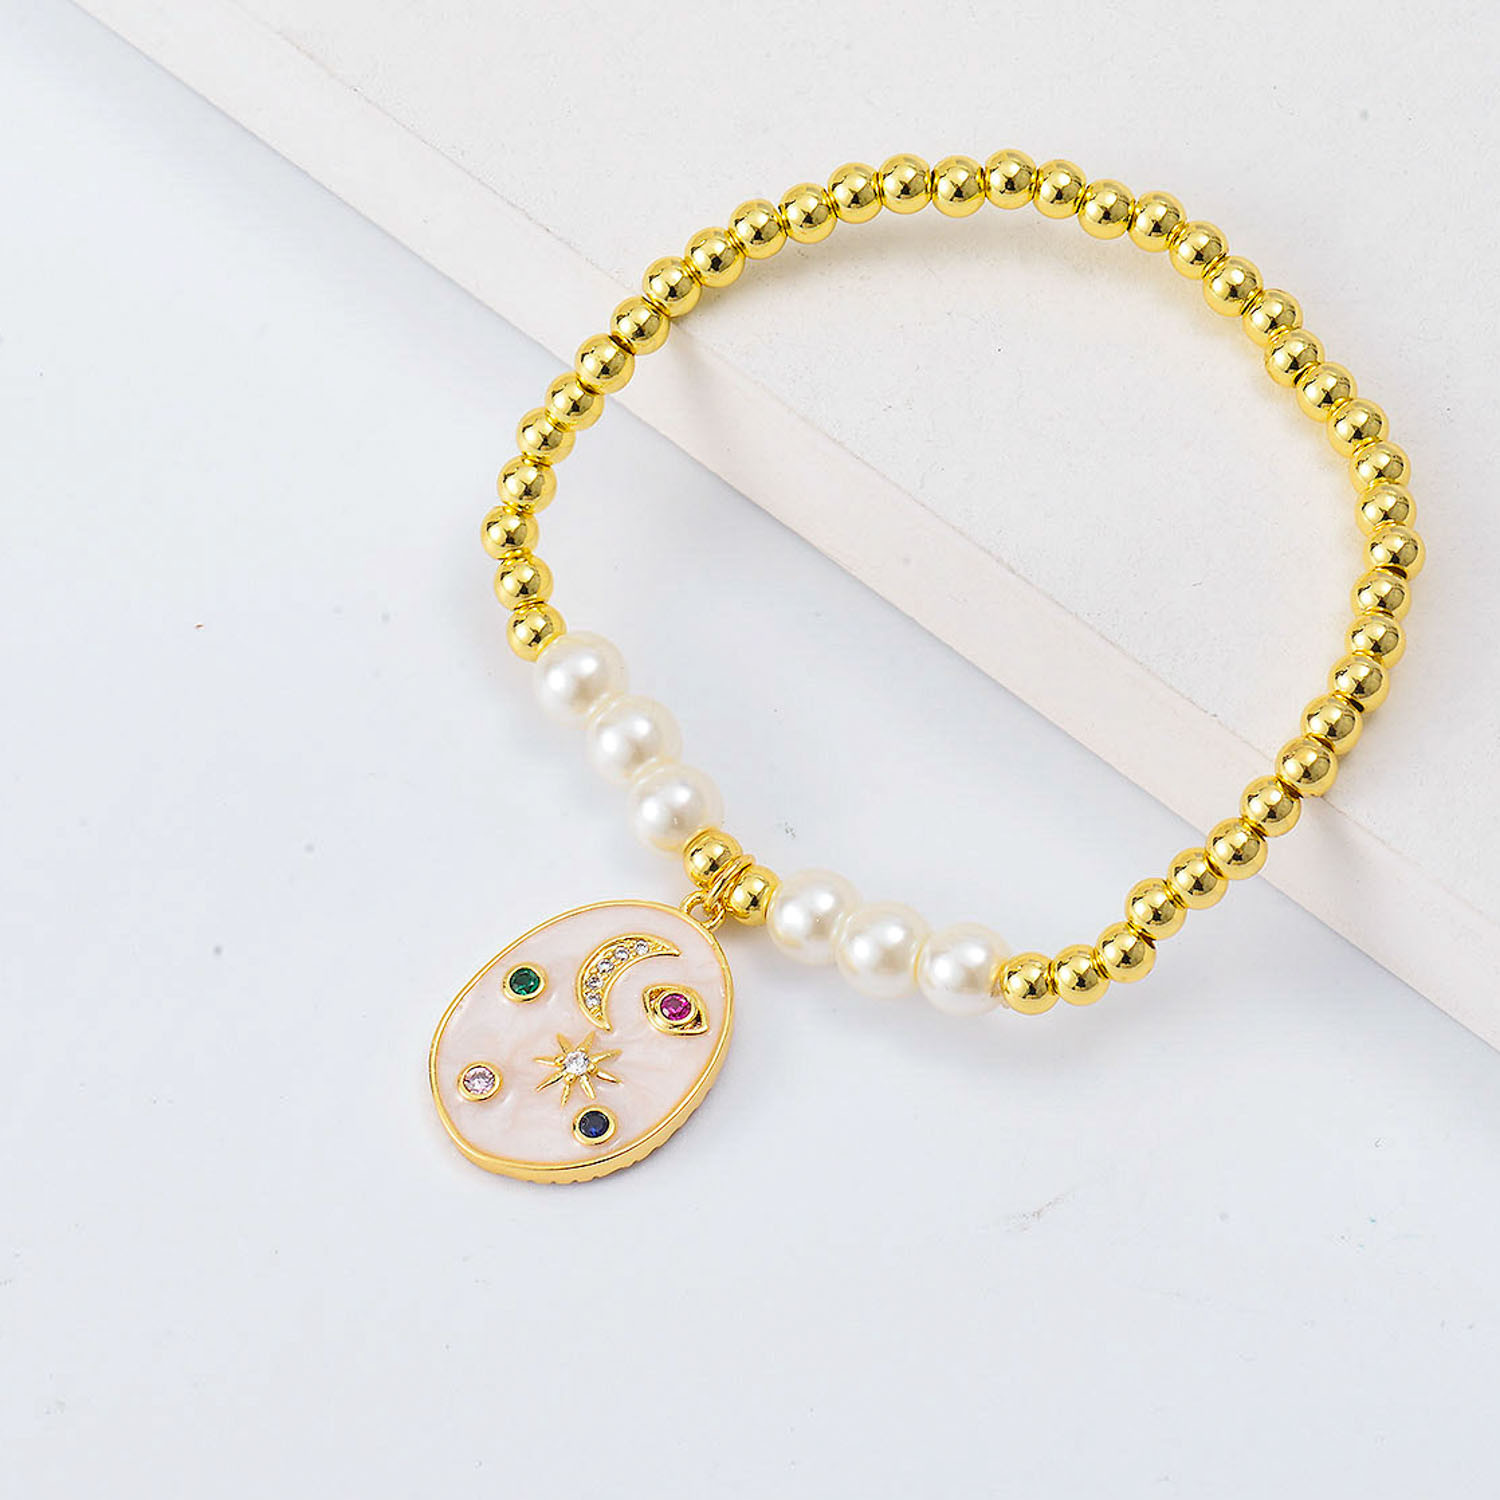 US$ 2.36 ~ US$ 2.78 - pulseras personalizadas Oro Laminado con Dije de luna  cristal y perlas - Joyas De Acero Por Mayor